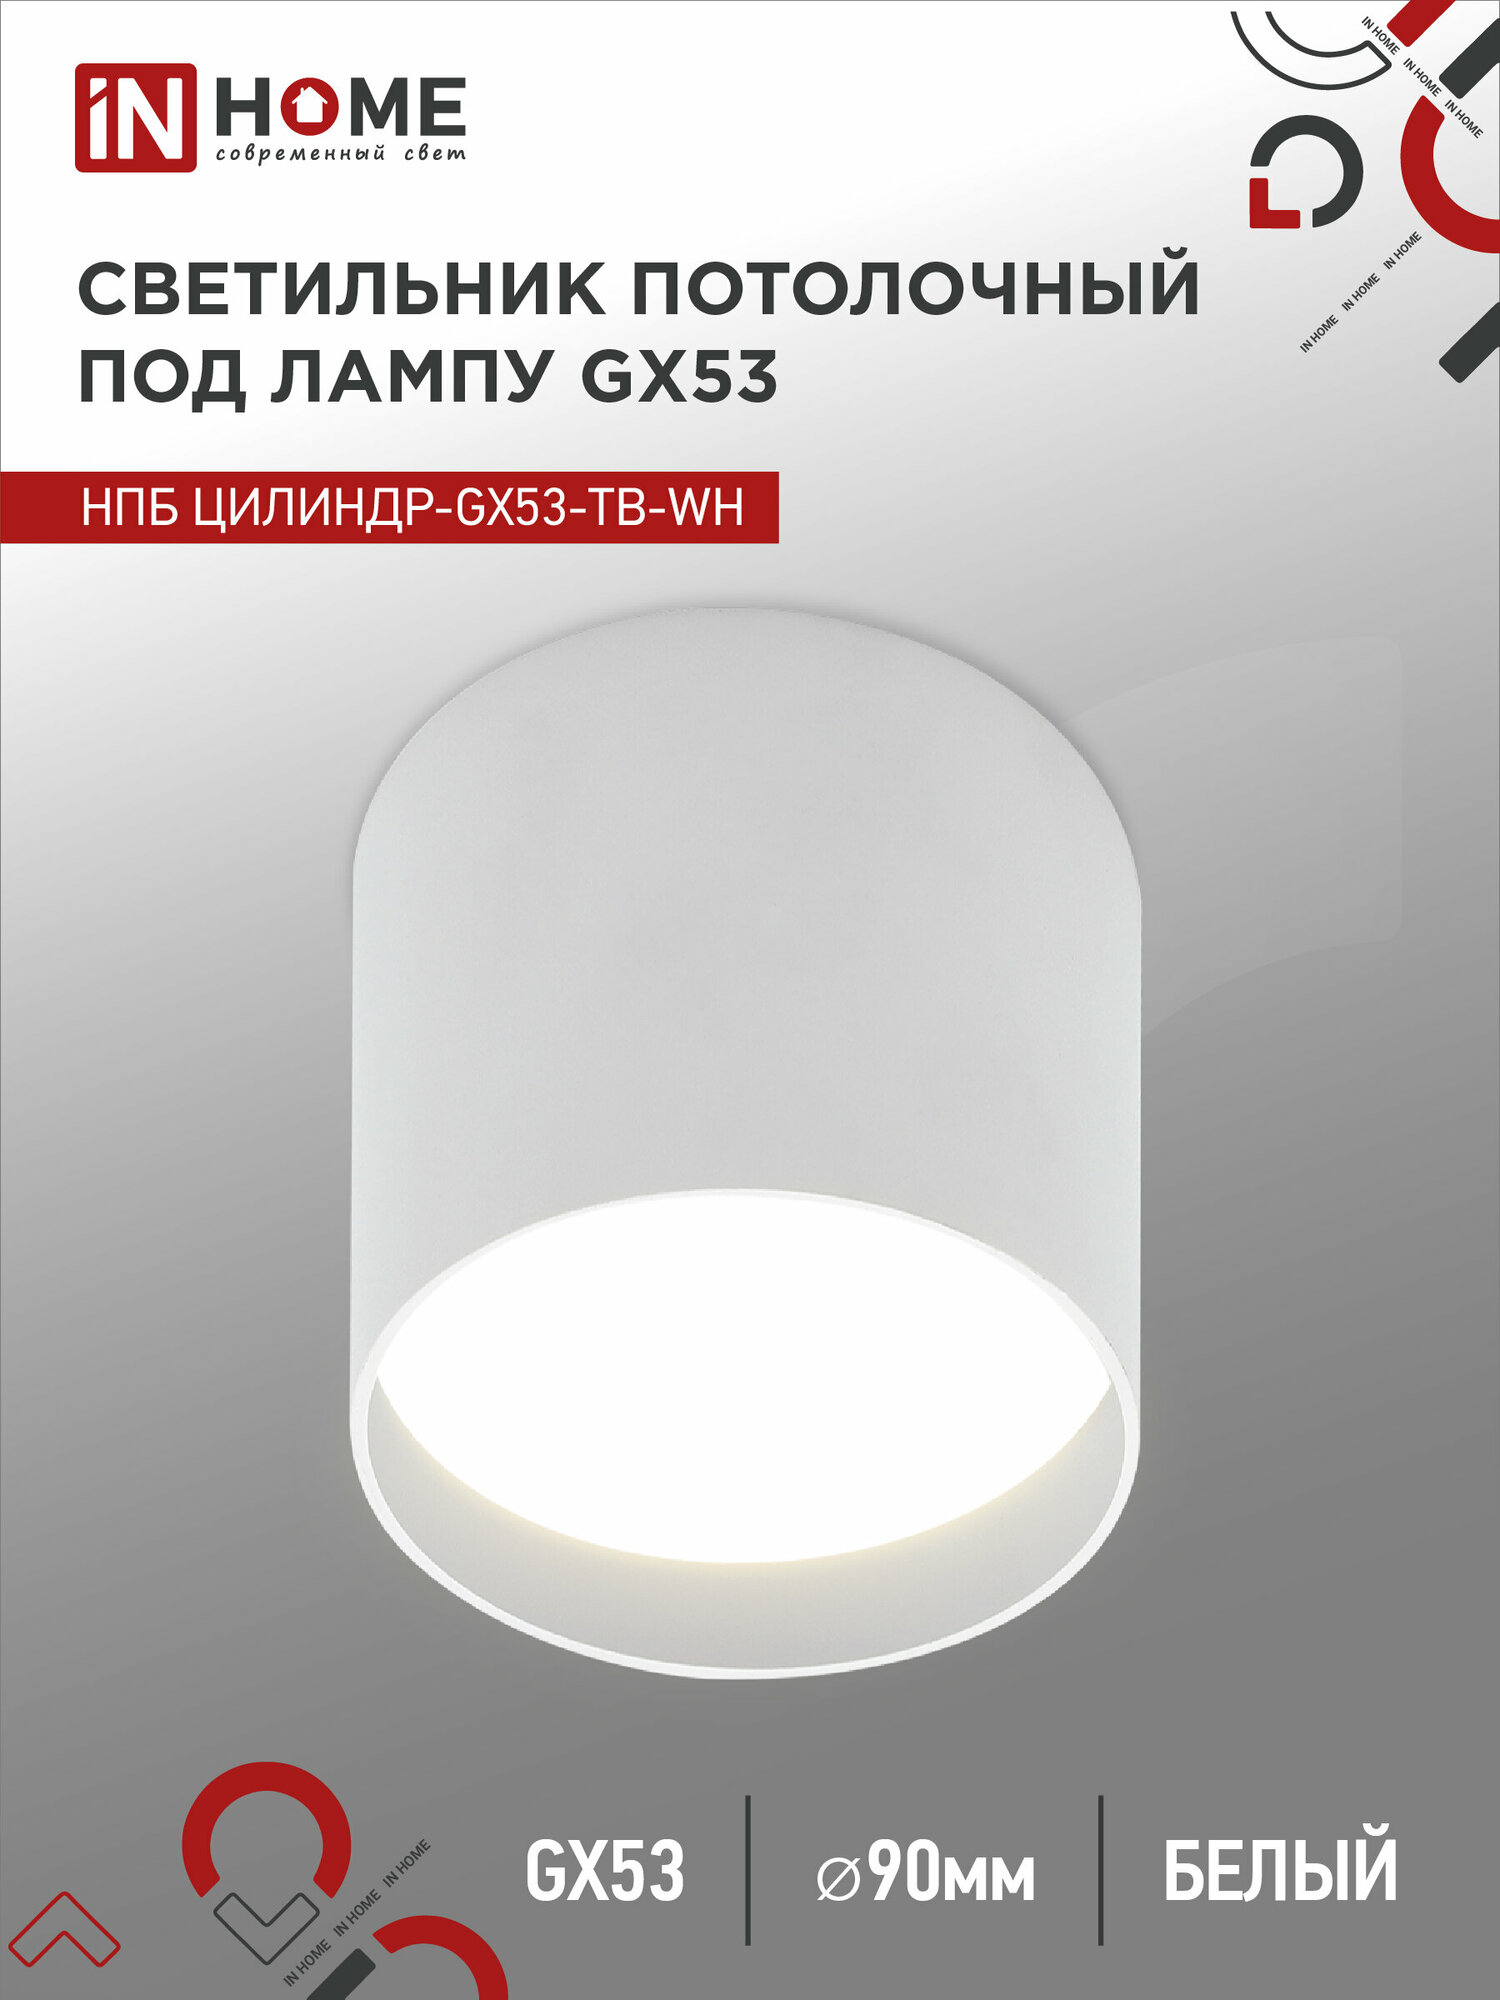 IN HOME Светильник потолочный нпб цилиндр-gx53-tb-wh под лампу gx53 90x90мм белый 4690612045481